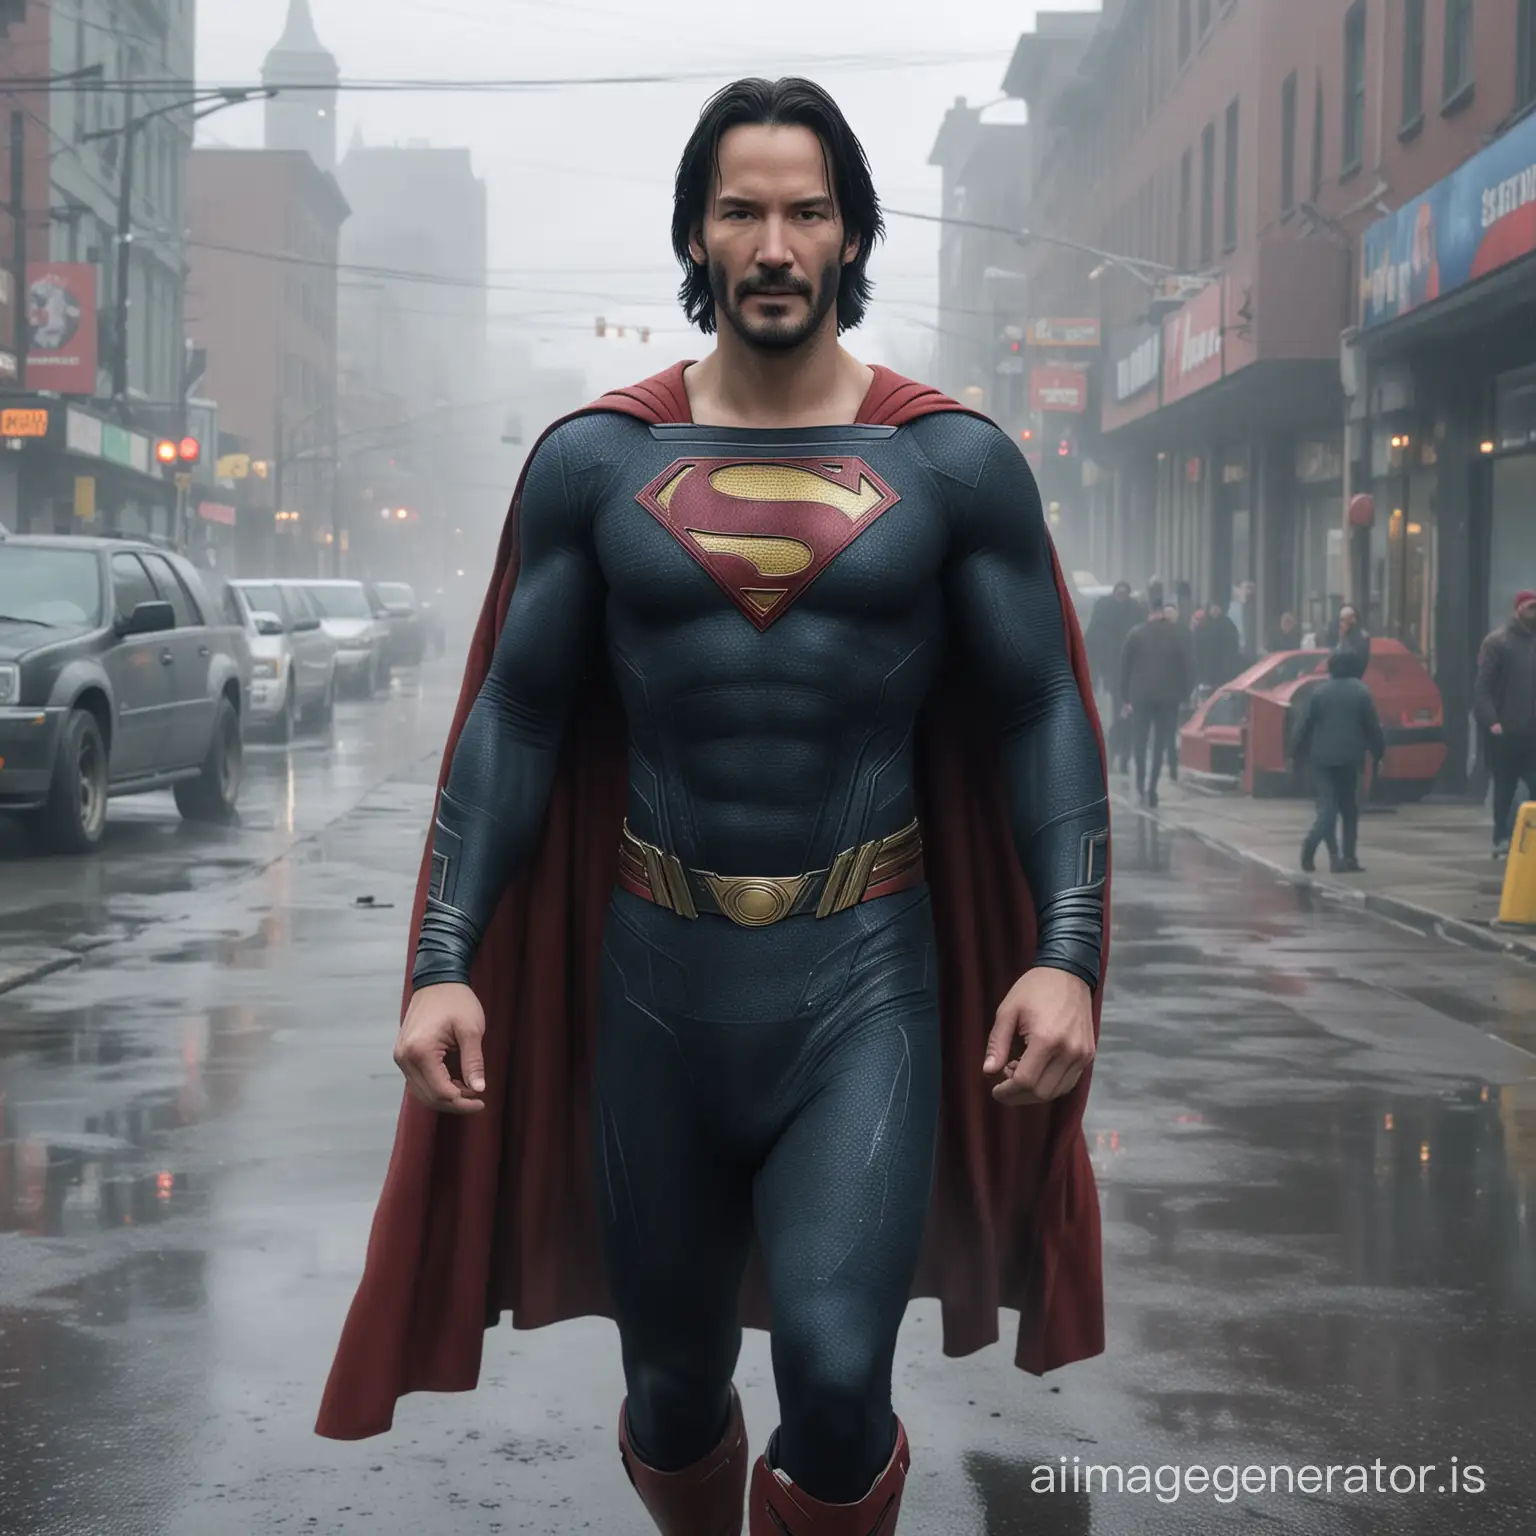 Keanu-Reeves-as-Superman-in-Foggy-Canadian-Street